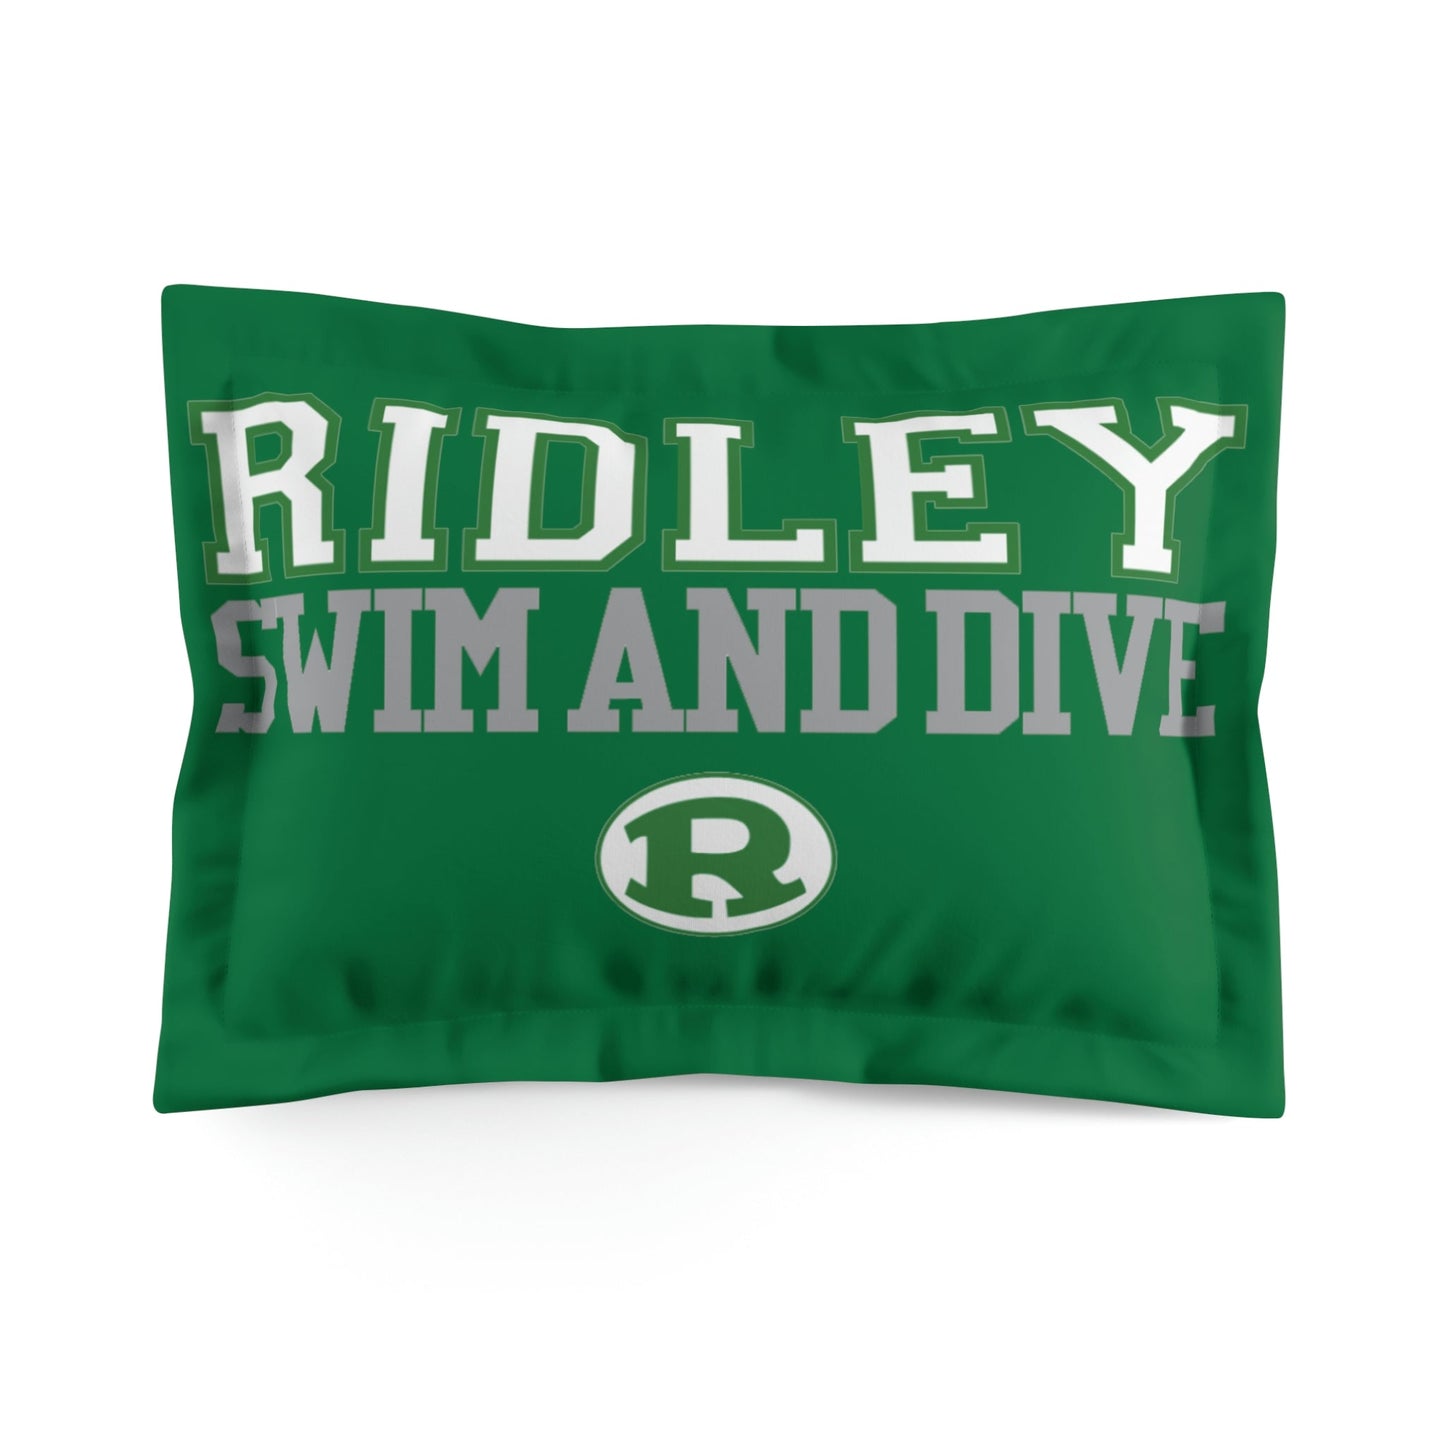 Ridley Microfiber Pillow Sham